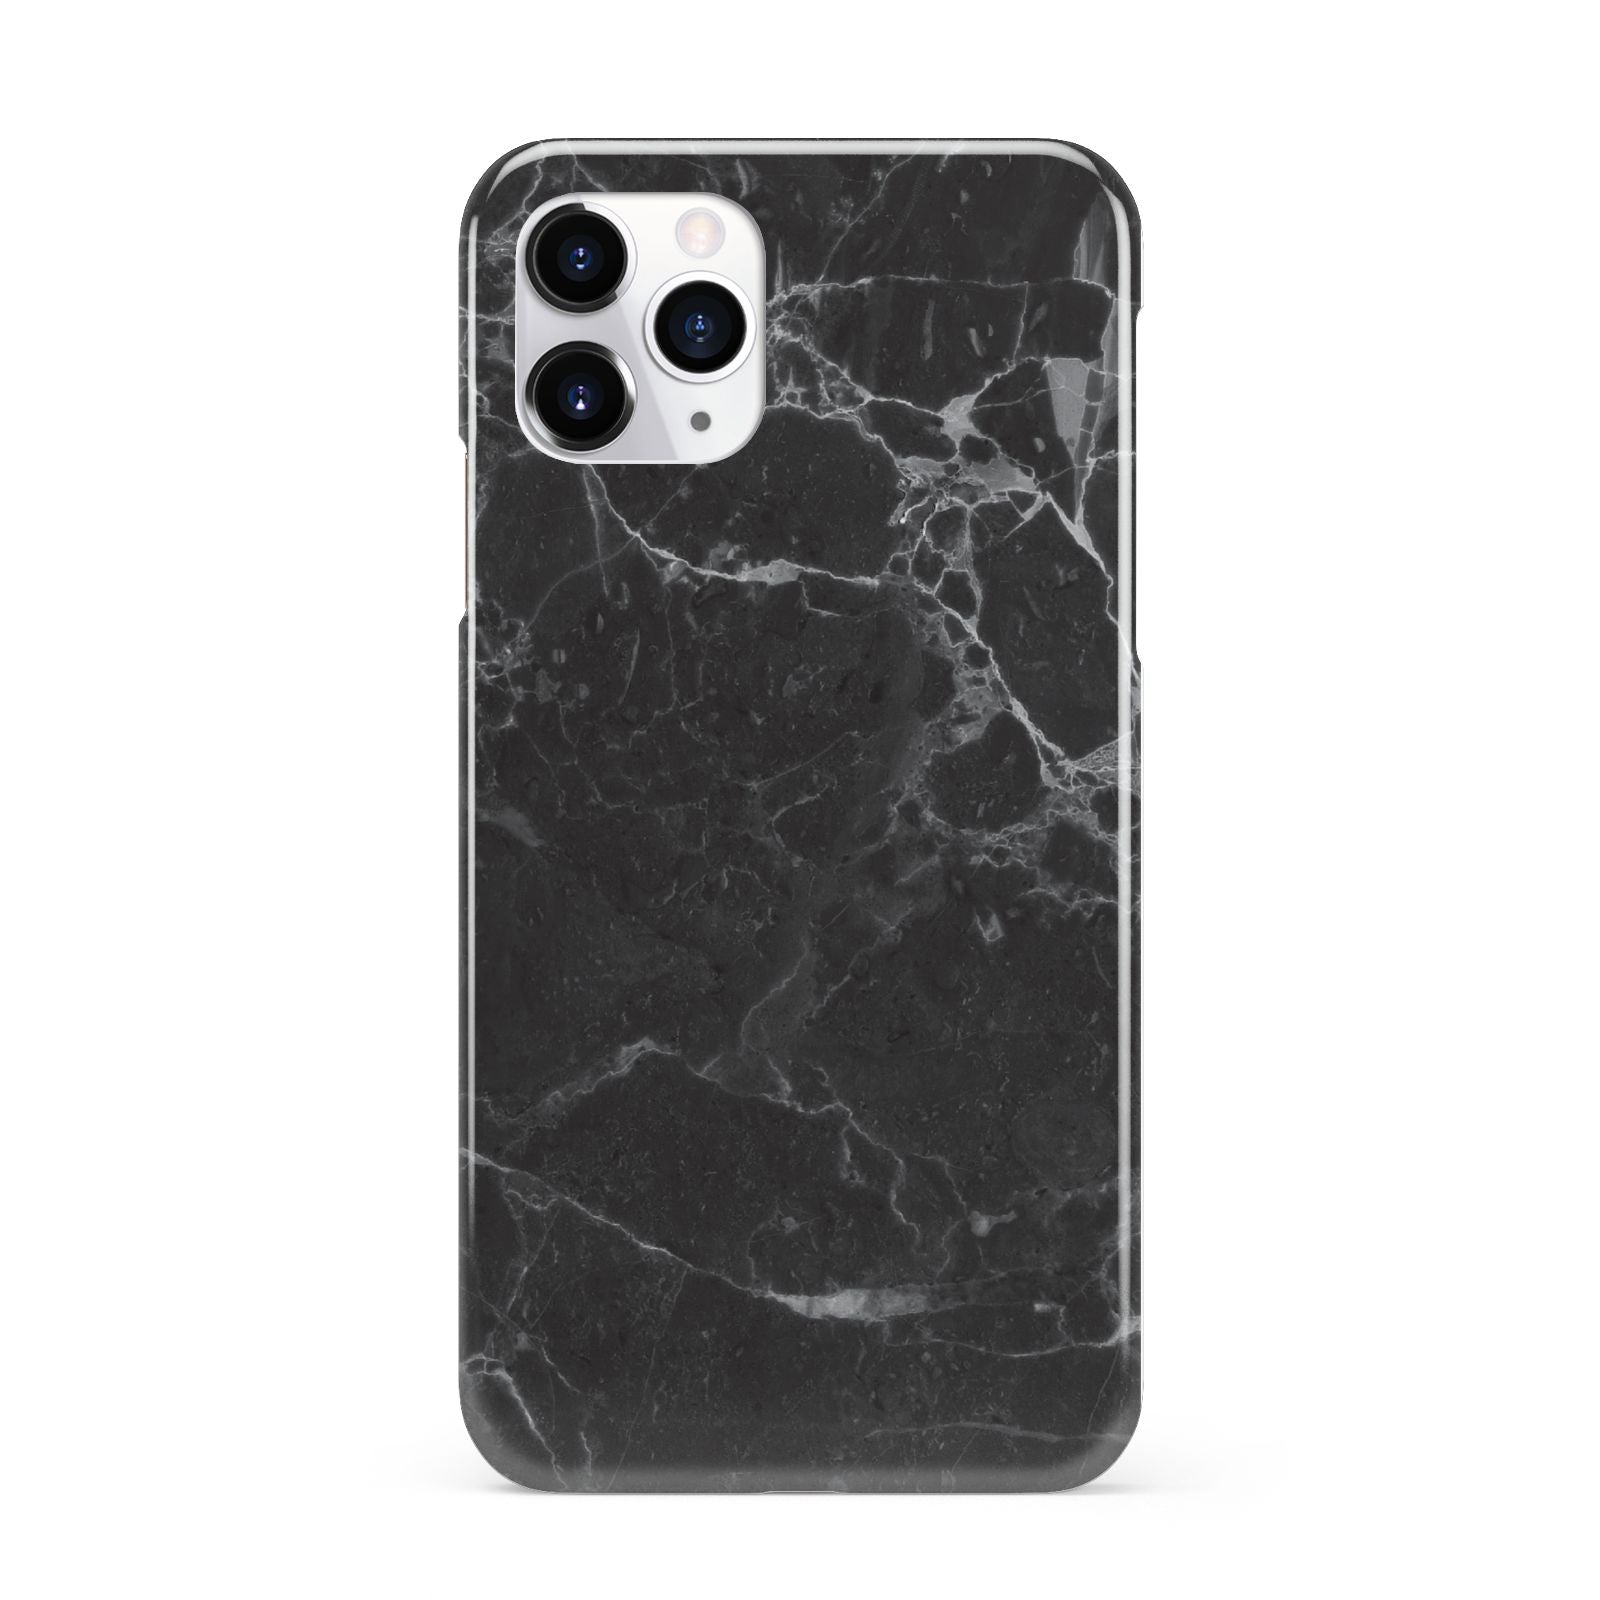 Faux Marble Effect Black iPhone 11 Pro 3D Snap Case